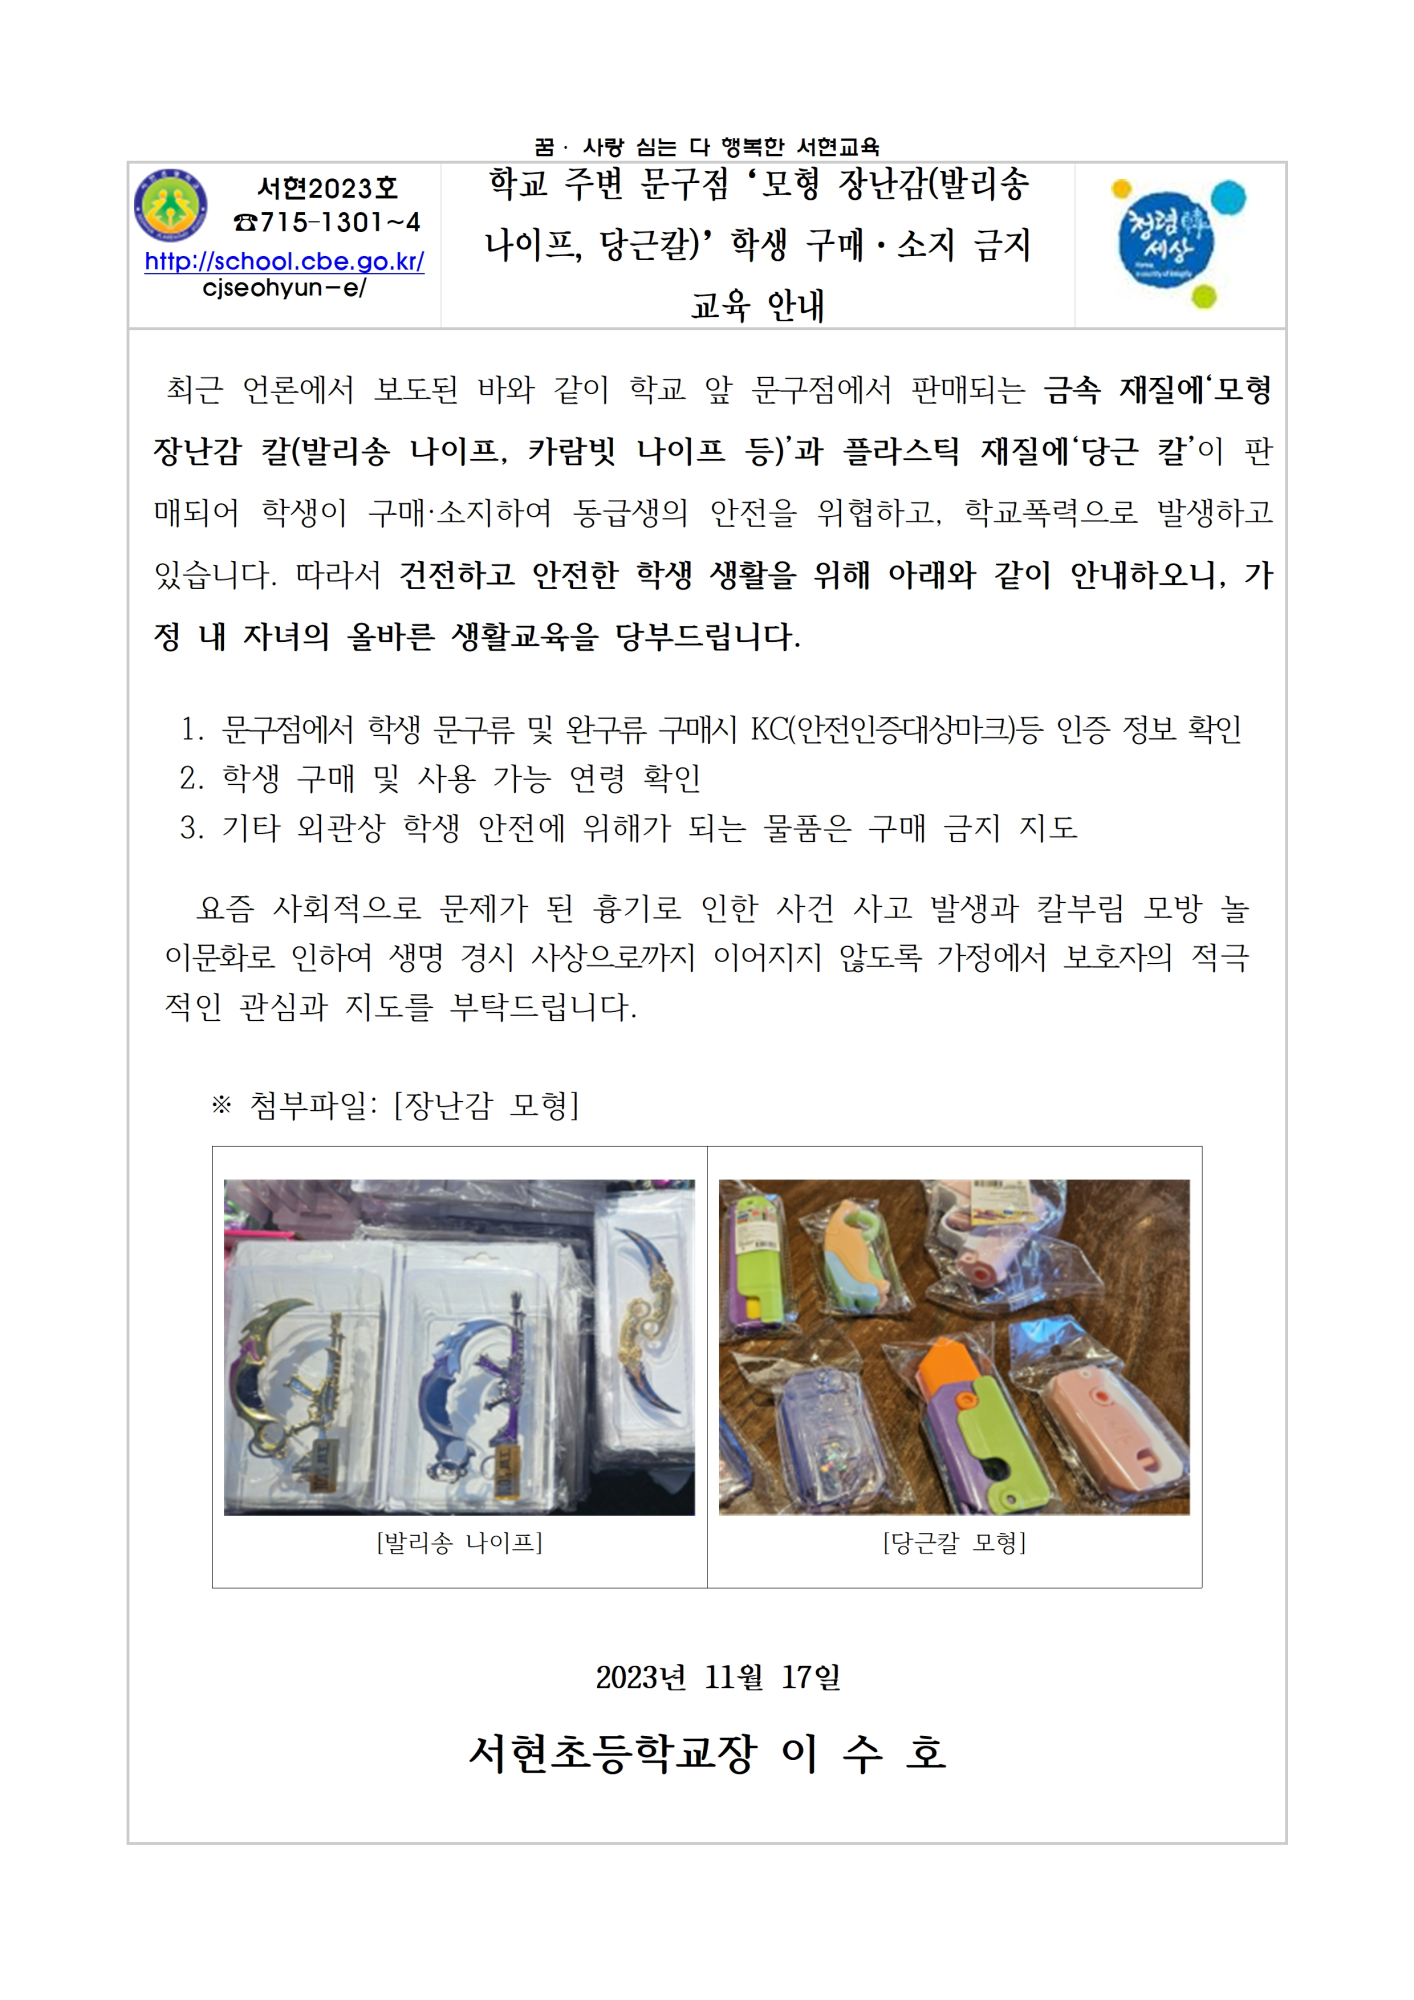 모형장난감(발리송 나이프, 당근칼) 학생 구매 및 소지 금지 안내 가정통신문001